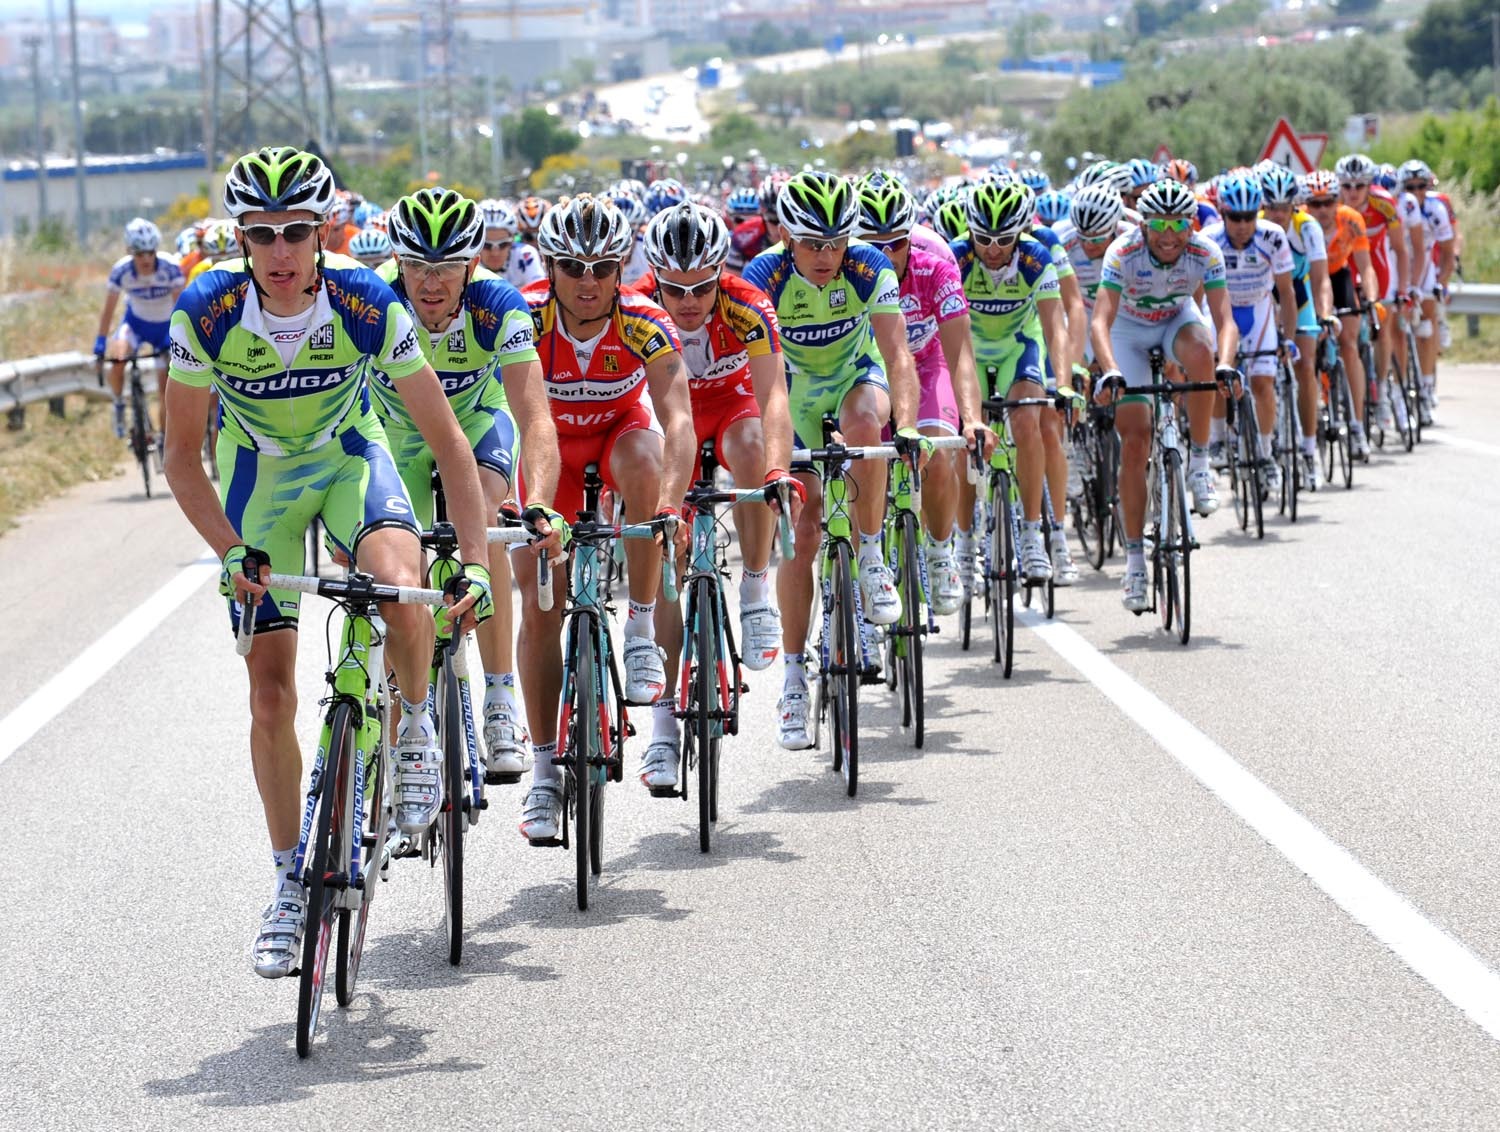 Kolarstwo: Katiusza nie wystartuje w Giro d'Italia 2013